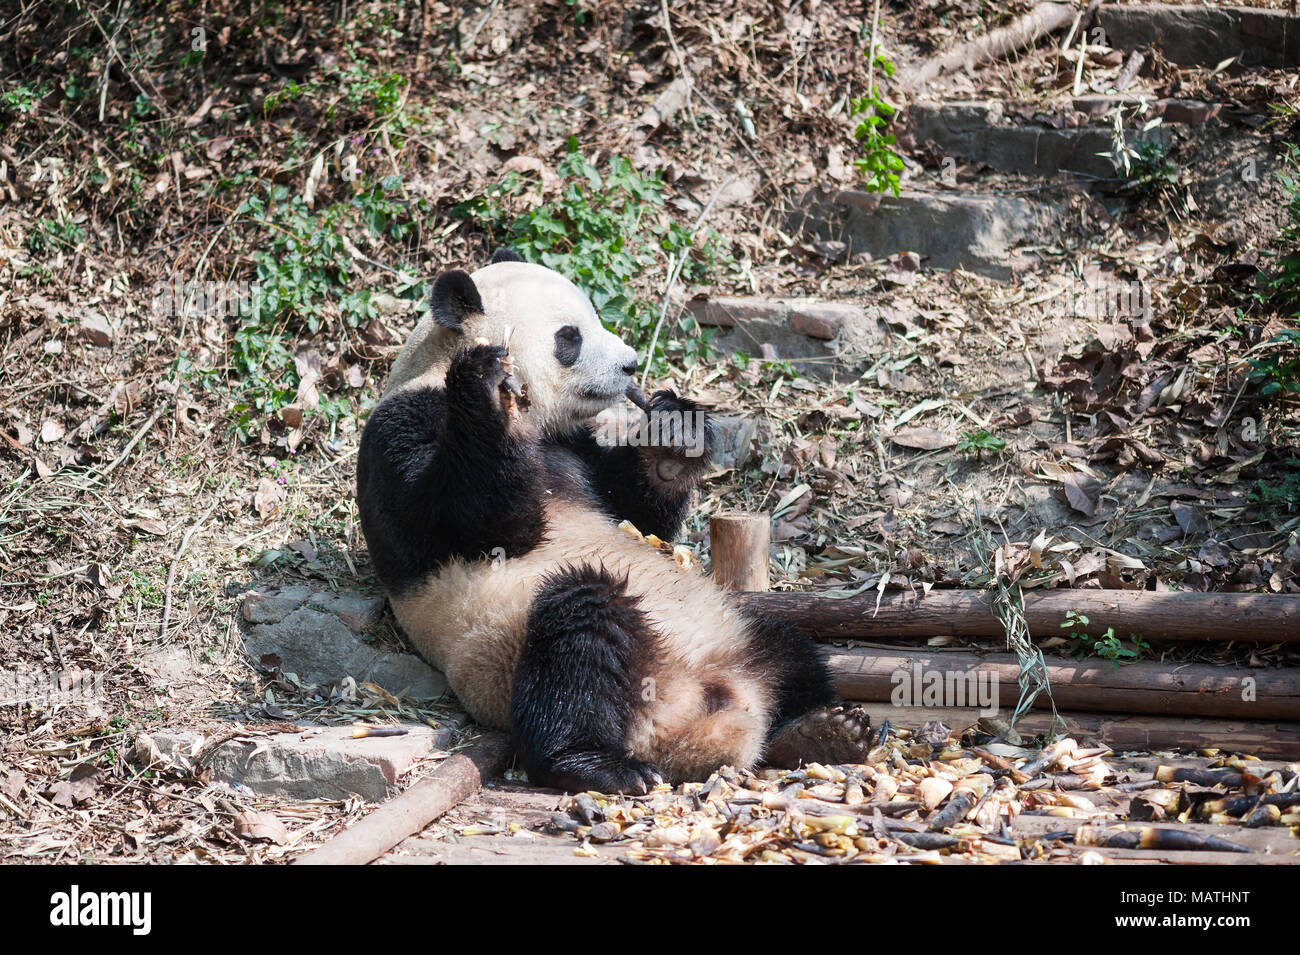 El panda gigante de sentarse y comer bambú, Chengdu, China Foto de stock